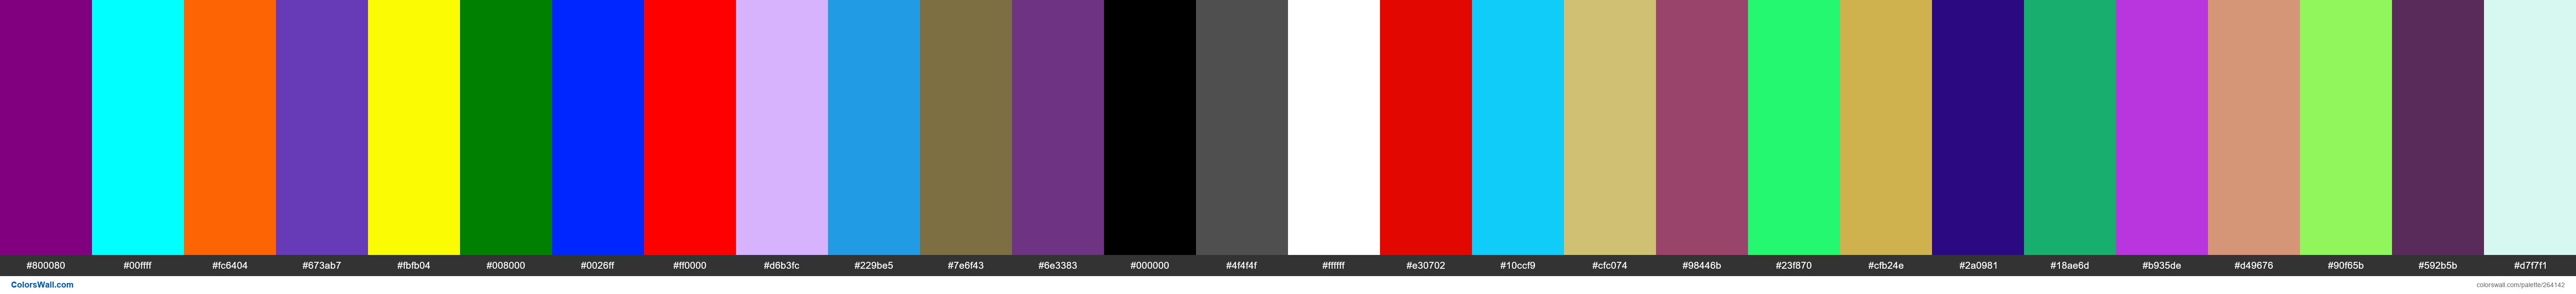 gvhj colors palette #800080, #00ffff, #fc6404 - ColorsWall